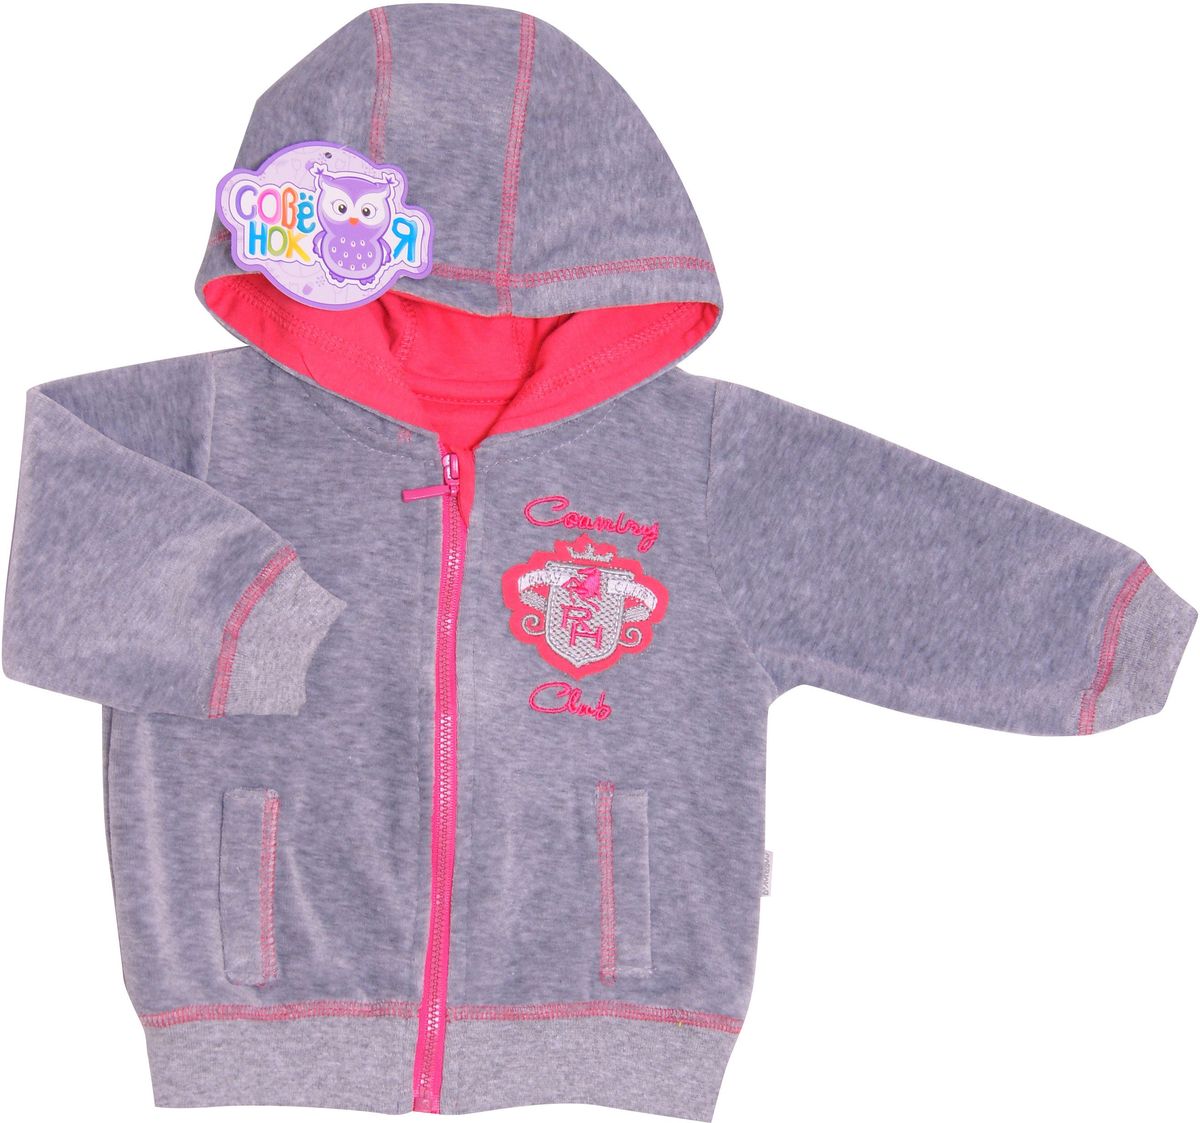 Куртка для девочки СовенокЯ Неон, цвет: серый, розовый. 7-2019. Размер 80